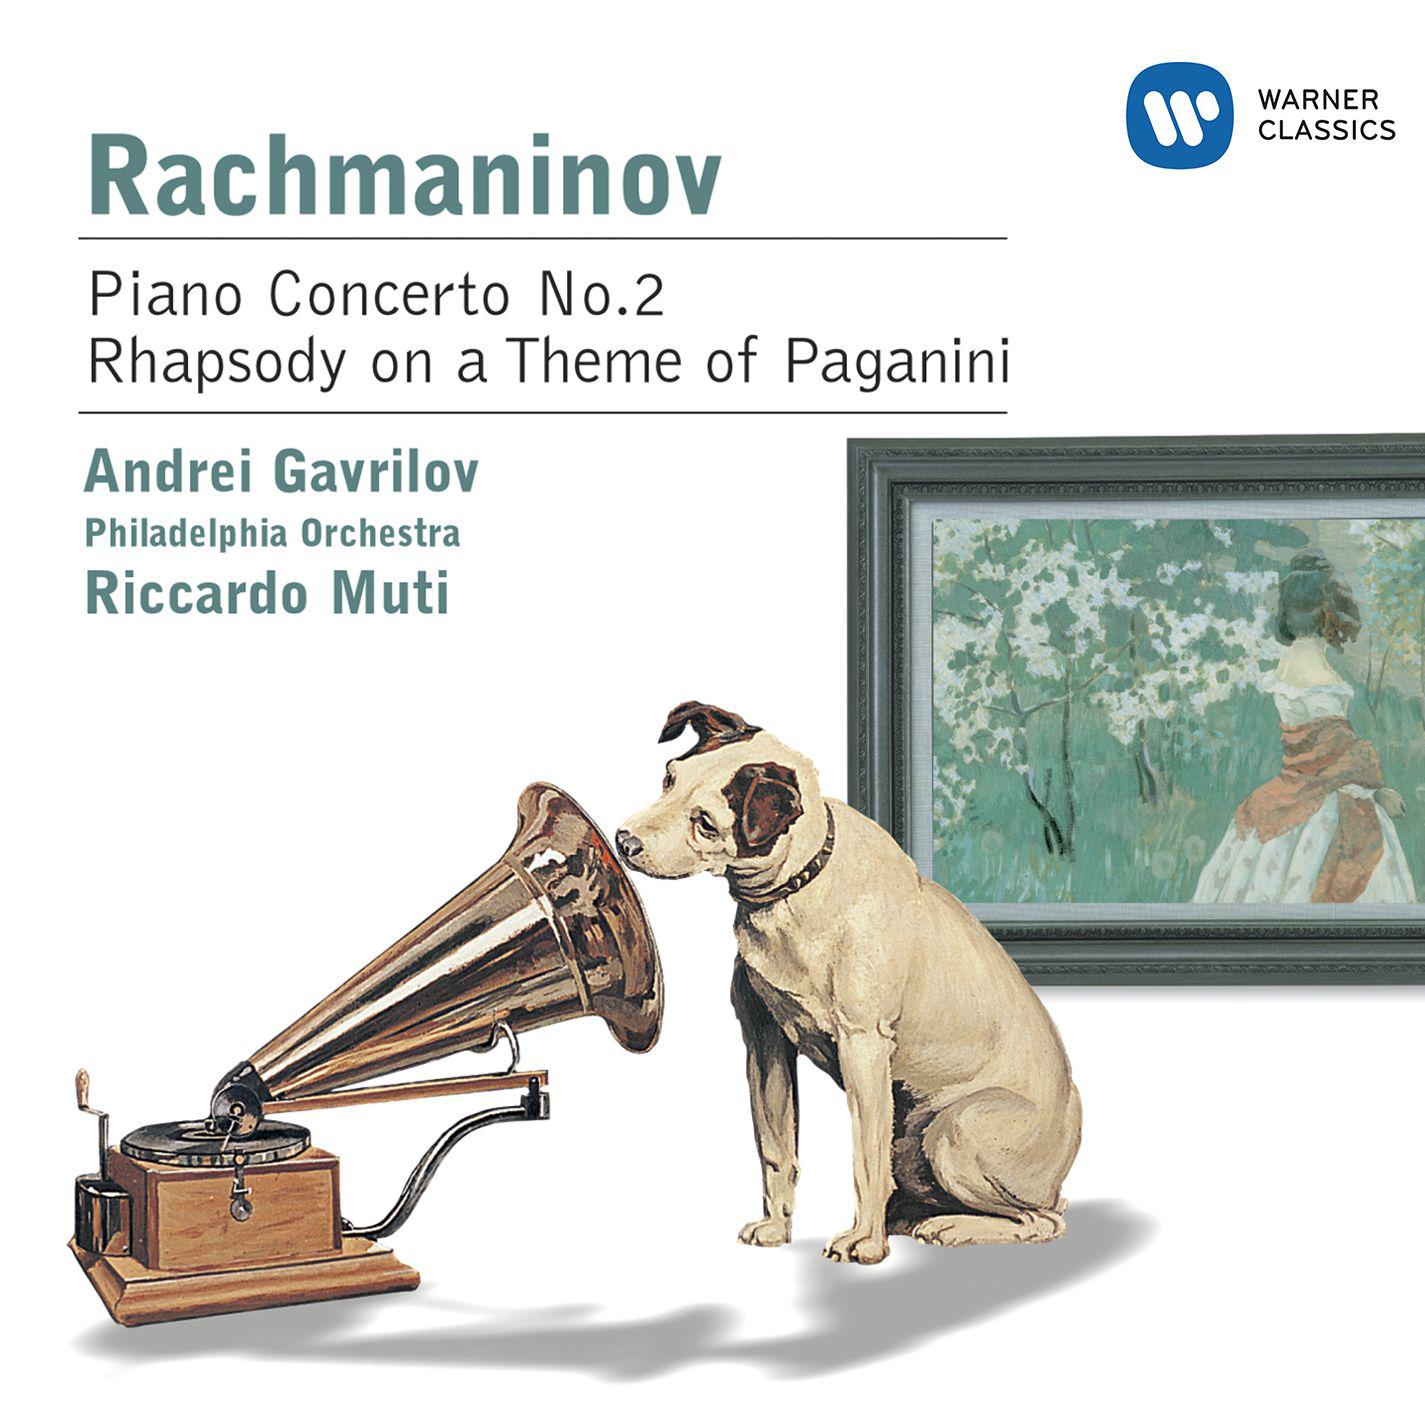 Rhapsody on a Theme of Paganini, Op. 43: Variation IV. Piu vivo